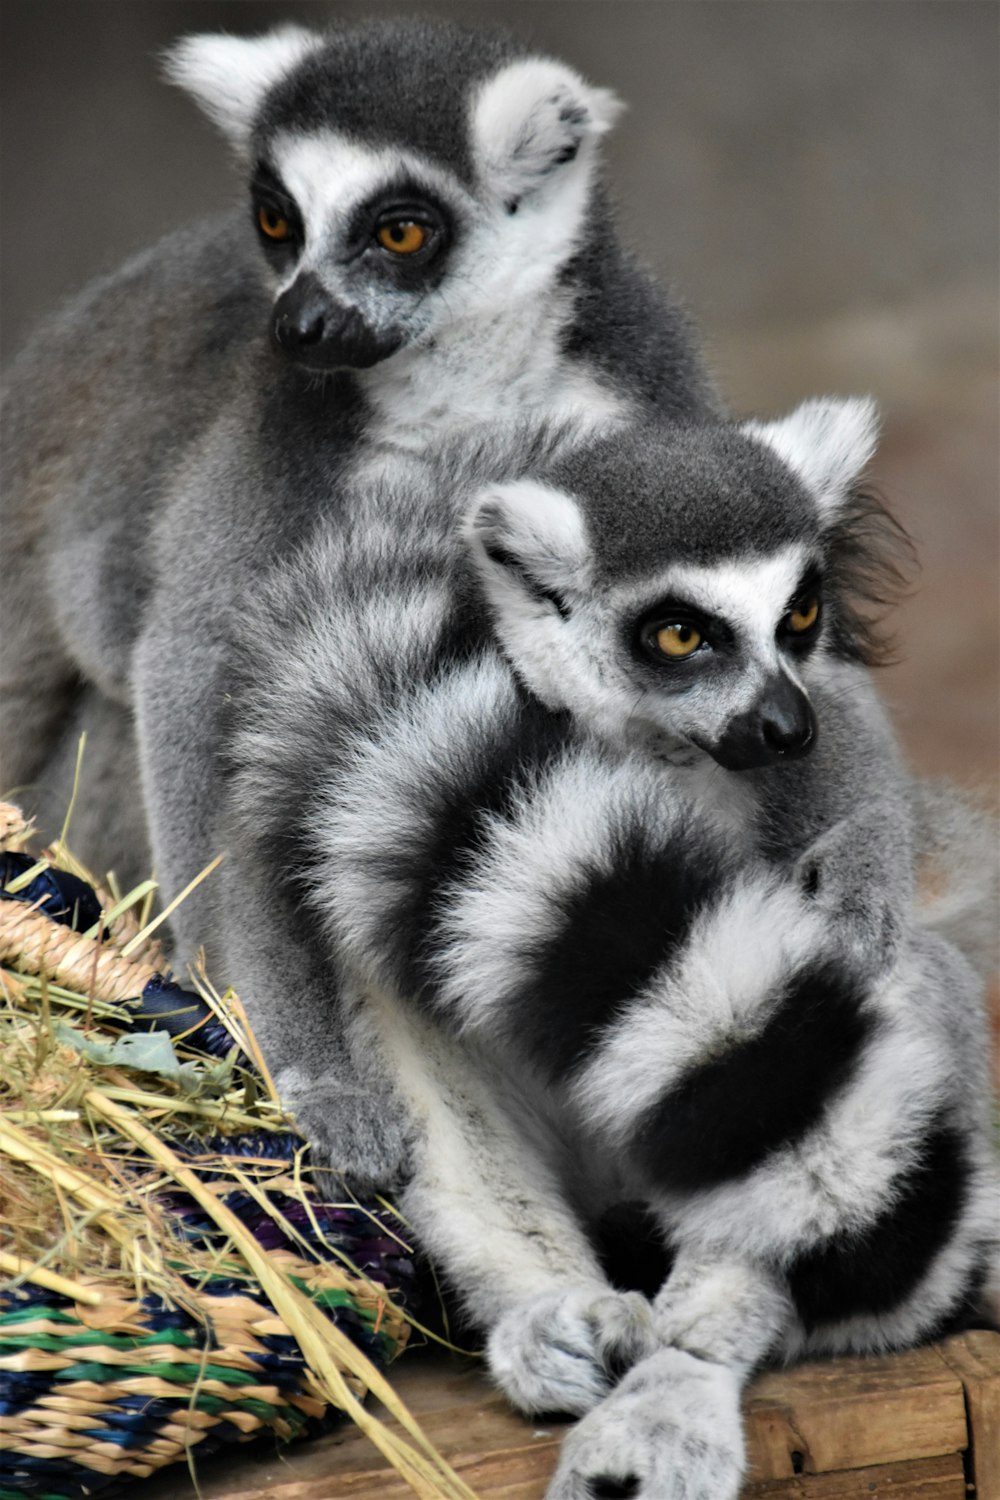 two ring-tailed lemurs sitting